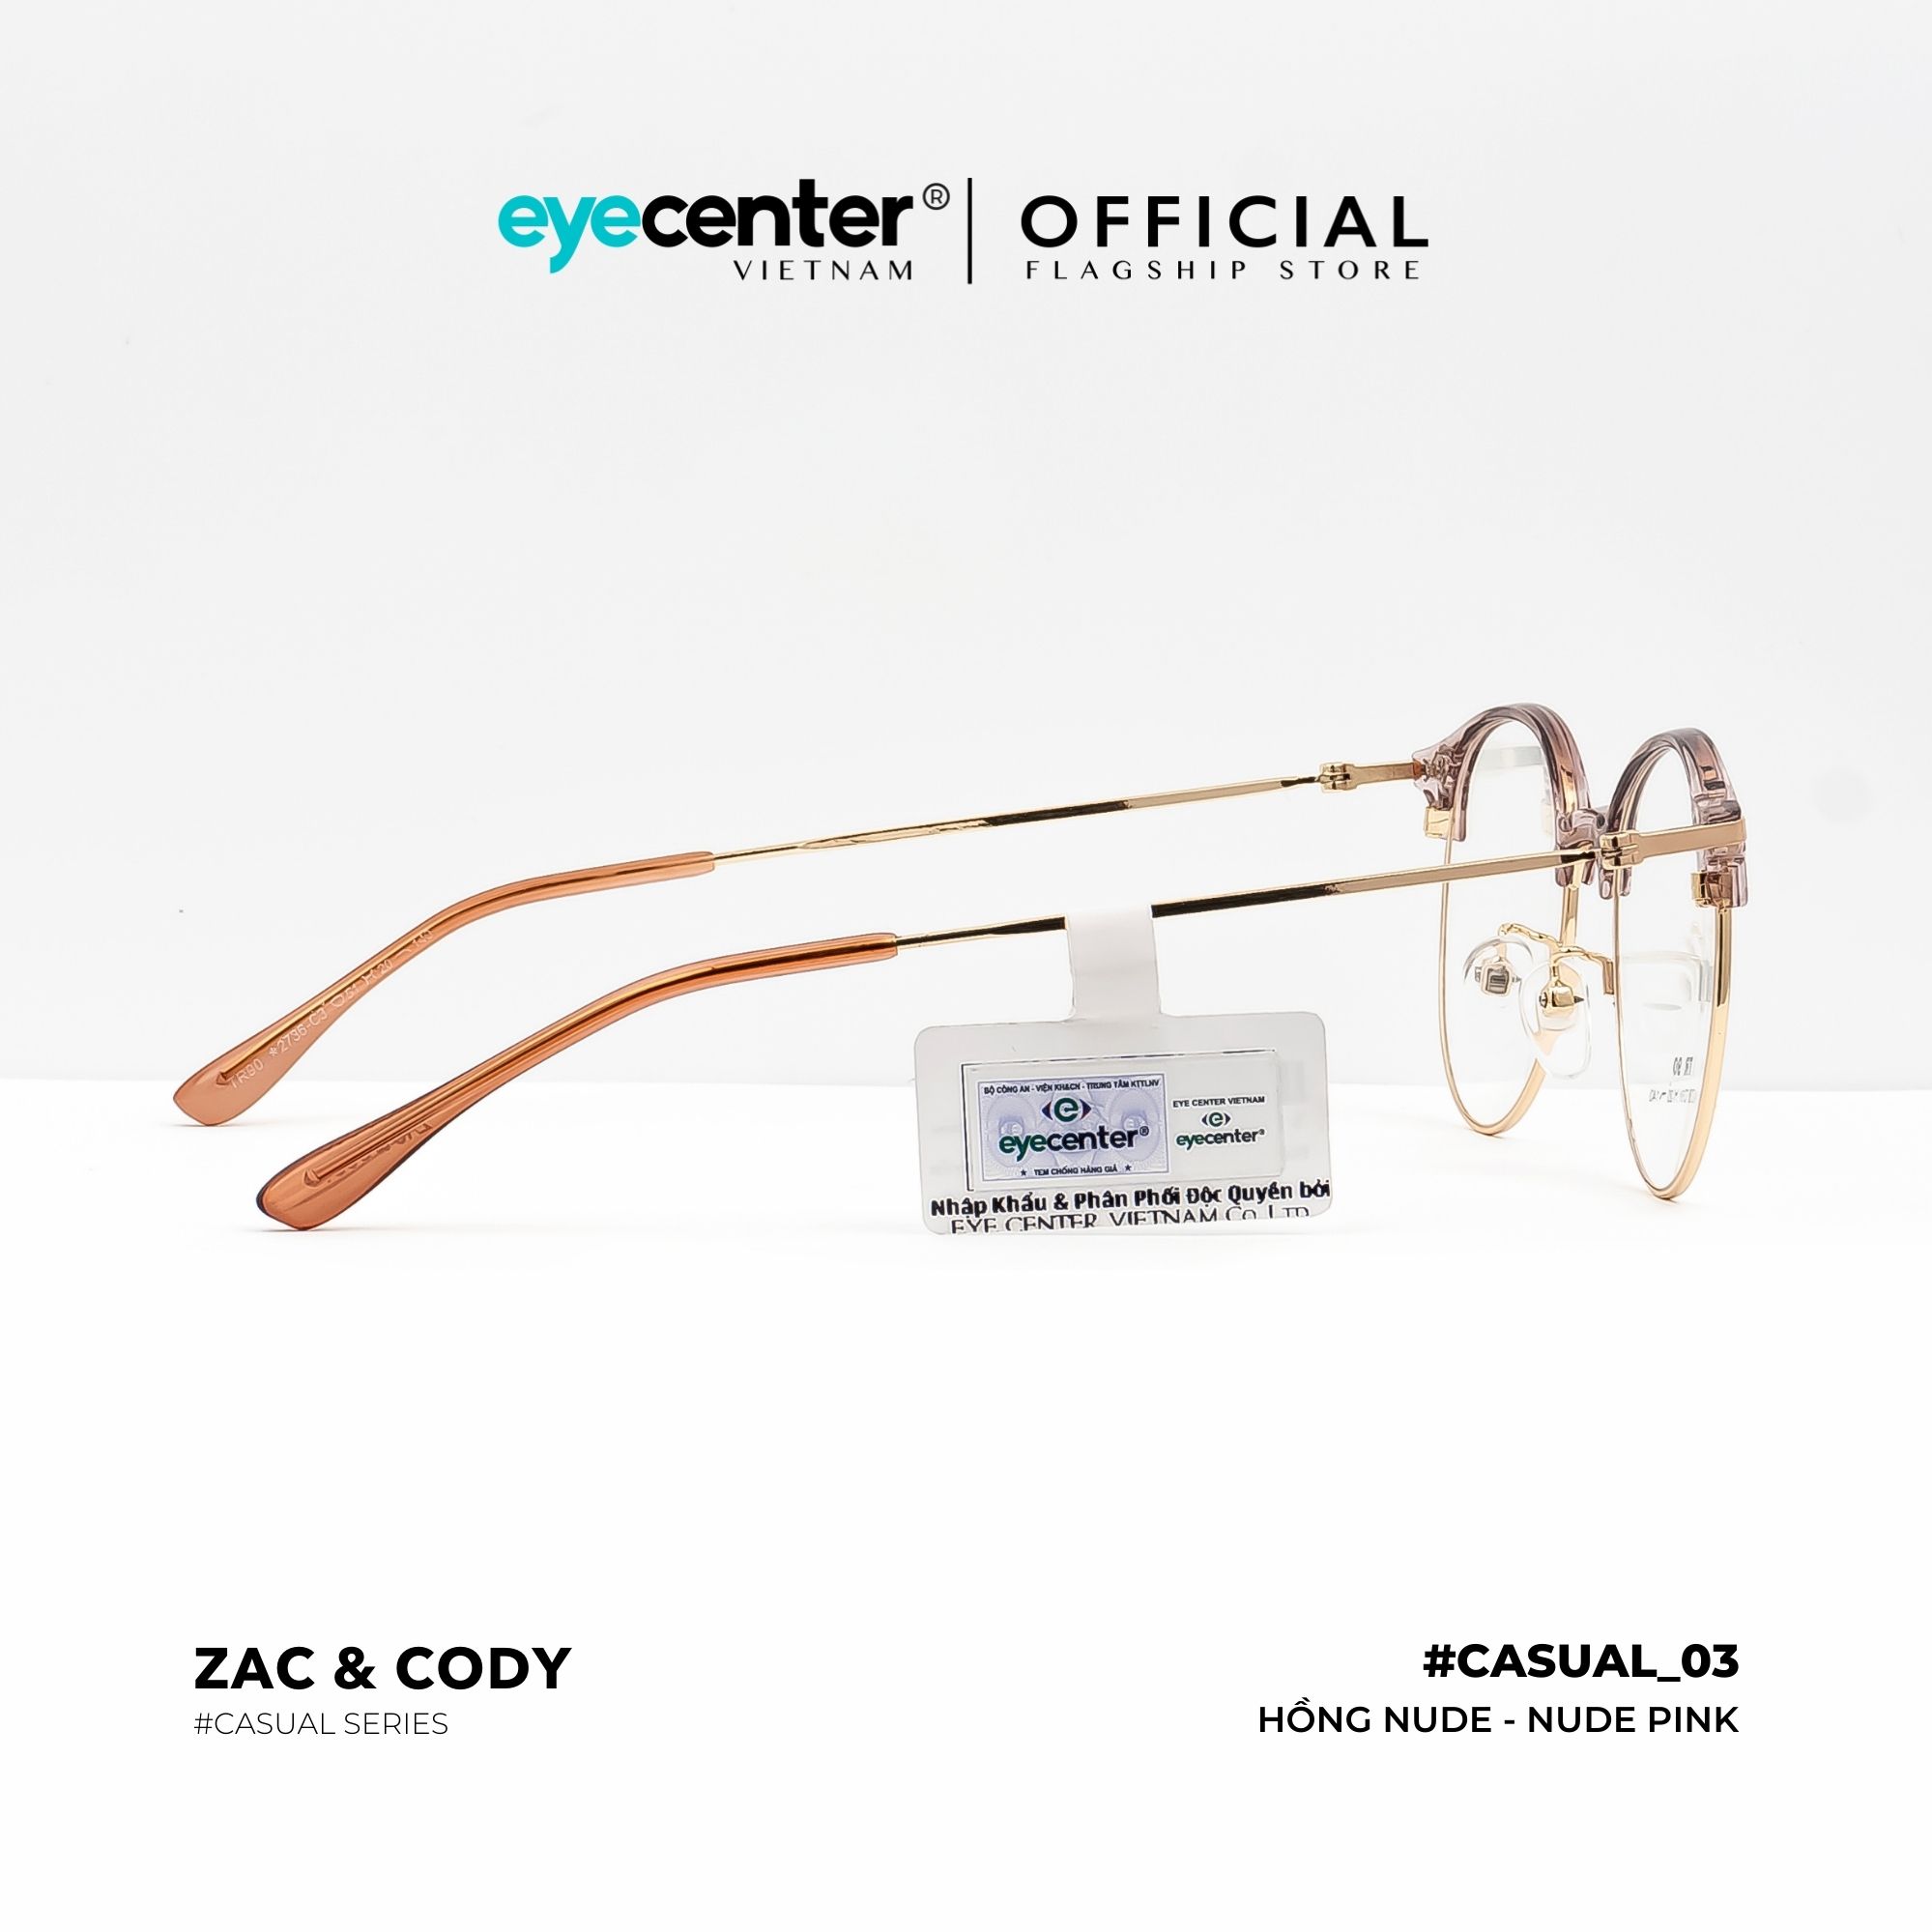 Gọng kính cận nam nữ chính hãng ZAC CODY kim loại chống gỉ nhiều màu C03-S by Eye Center Vietnam